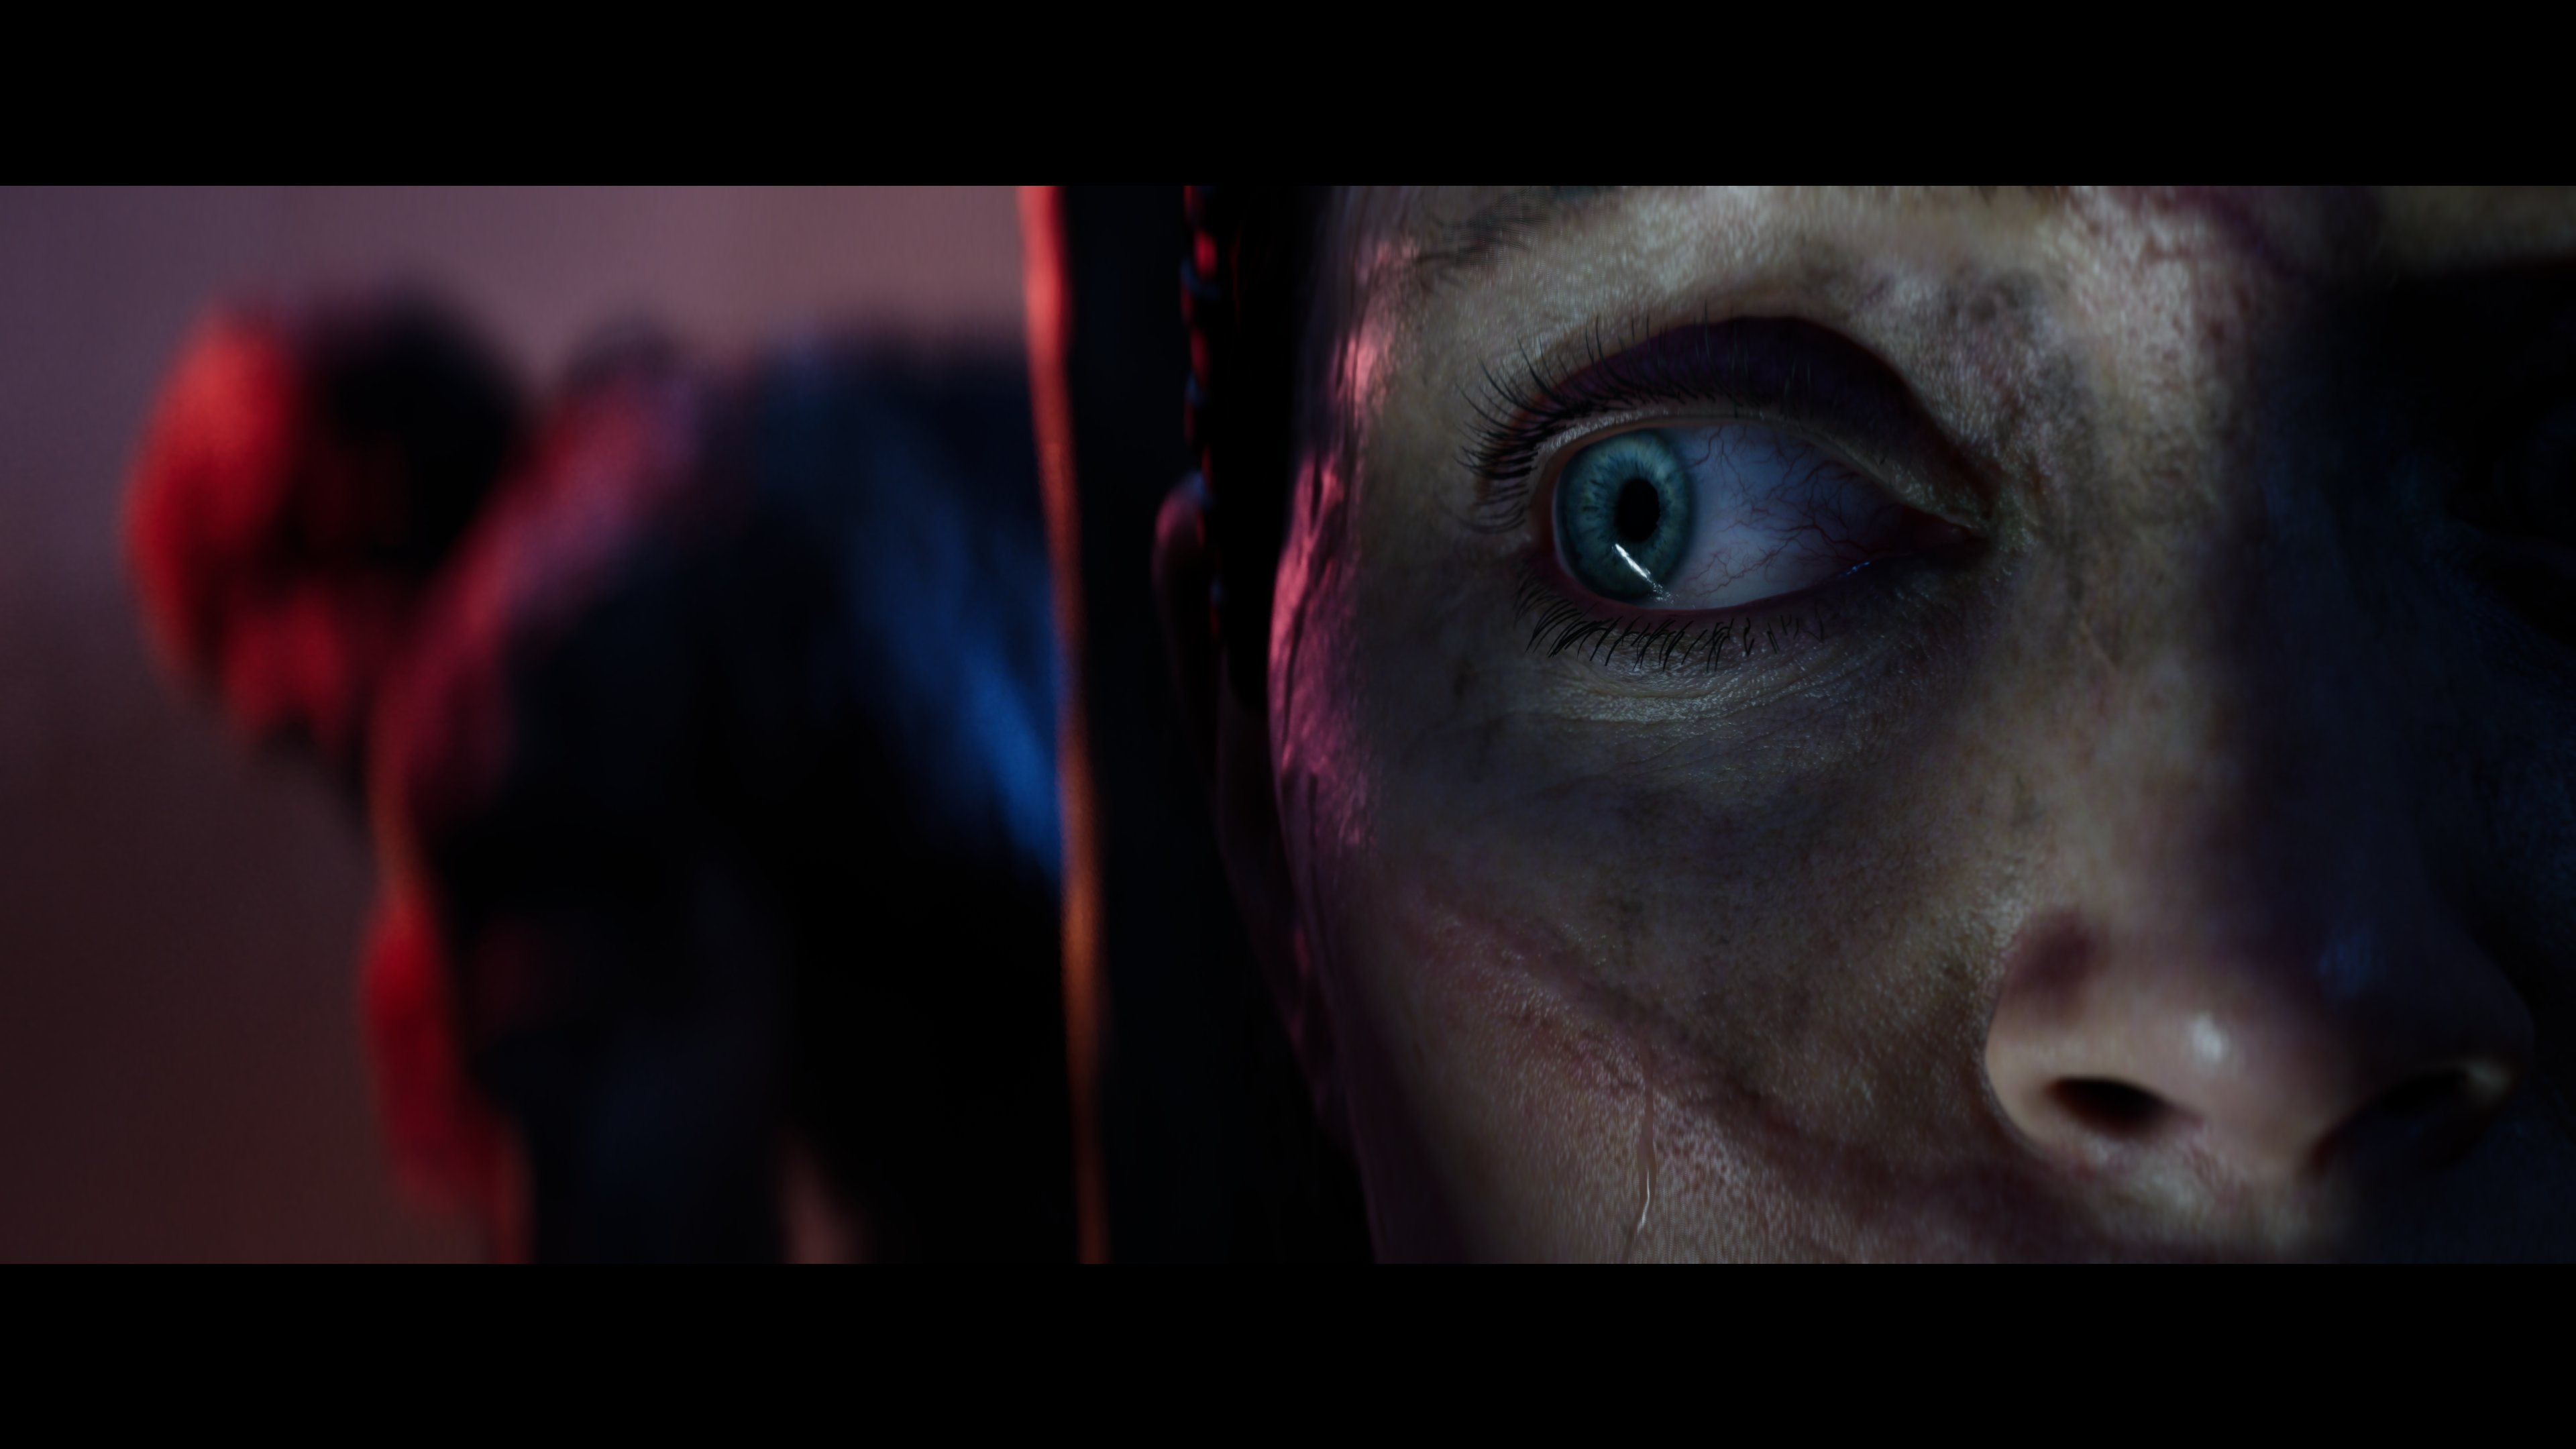 《地狱之刃2》确认有照片模式 新截图很有质感